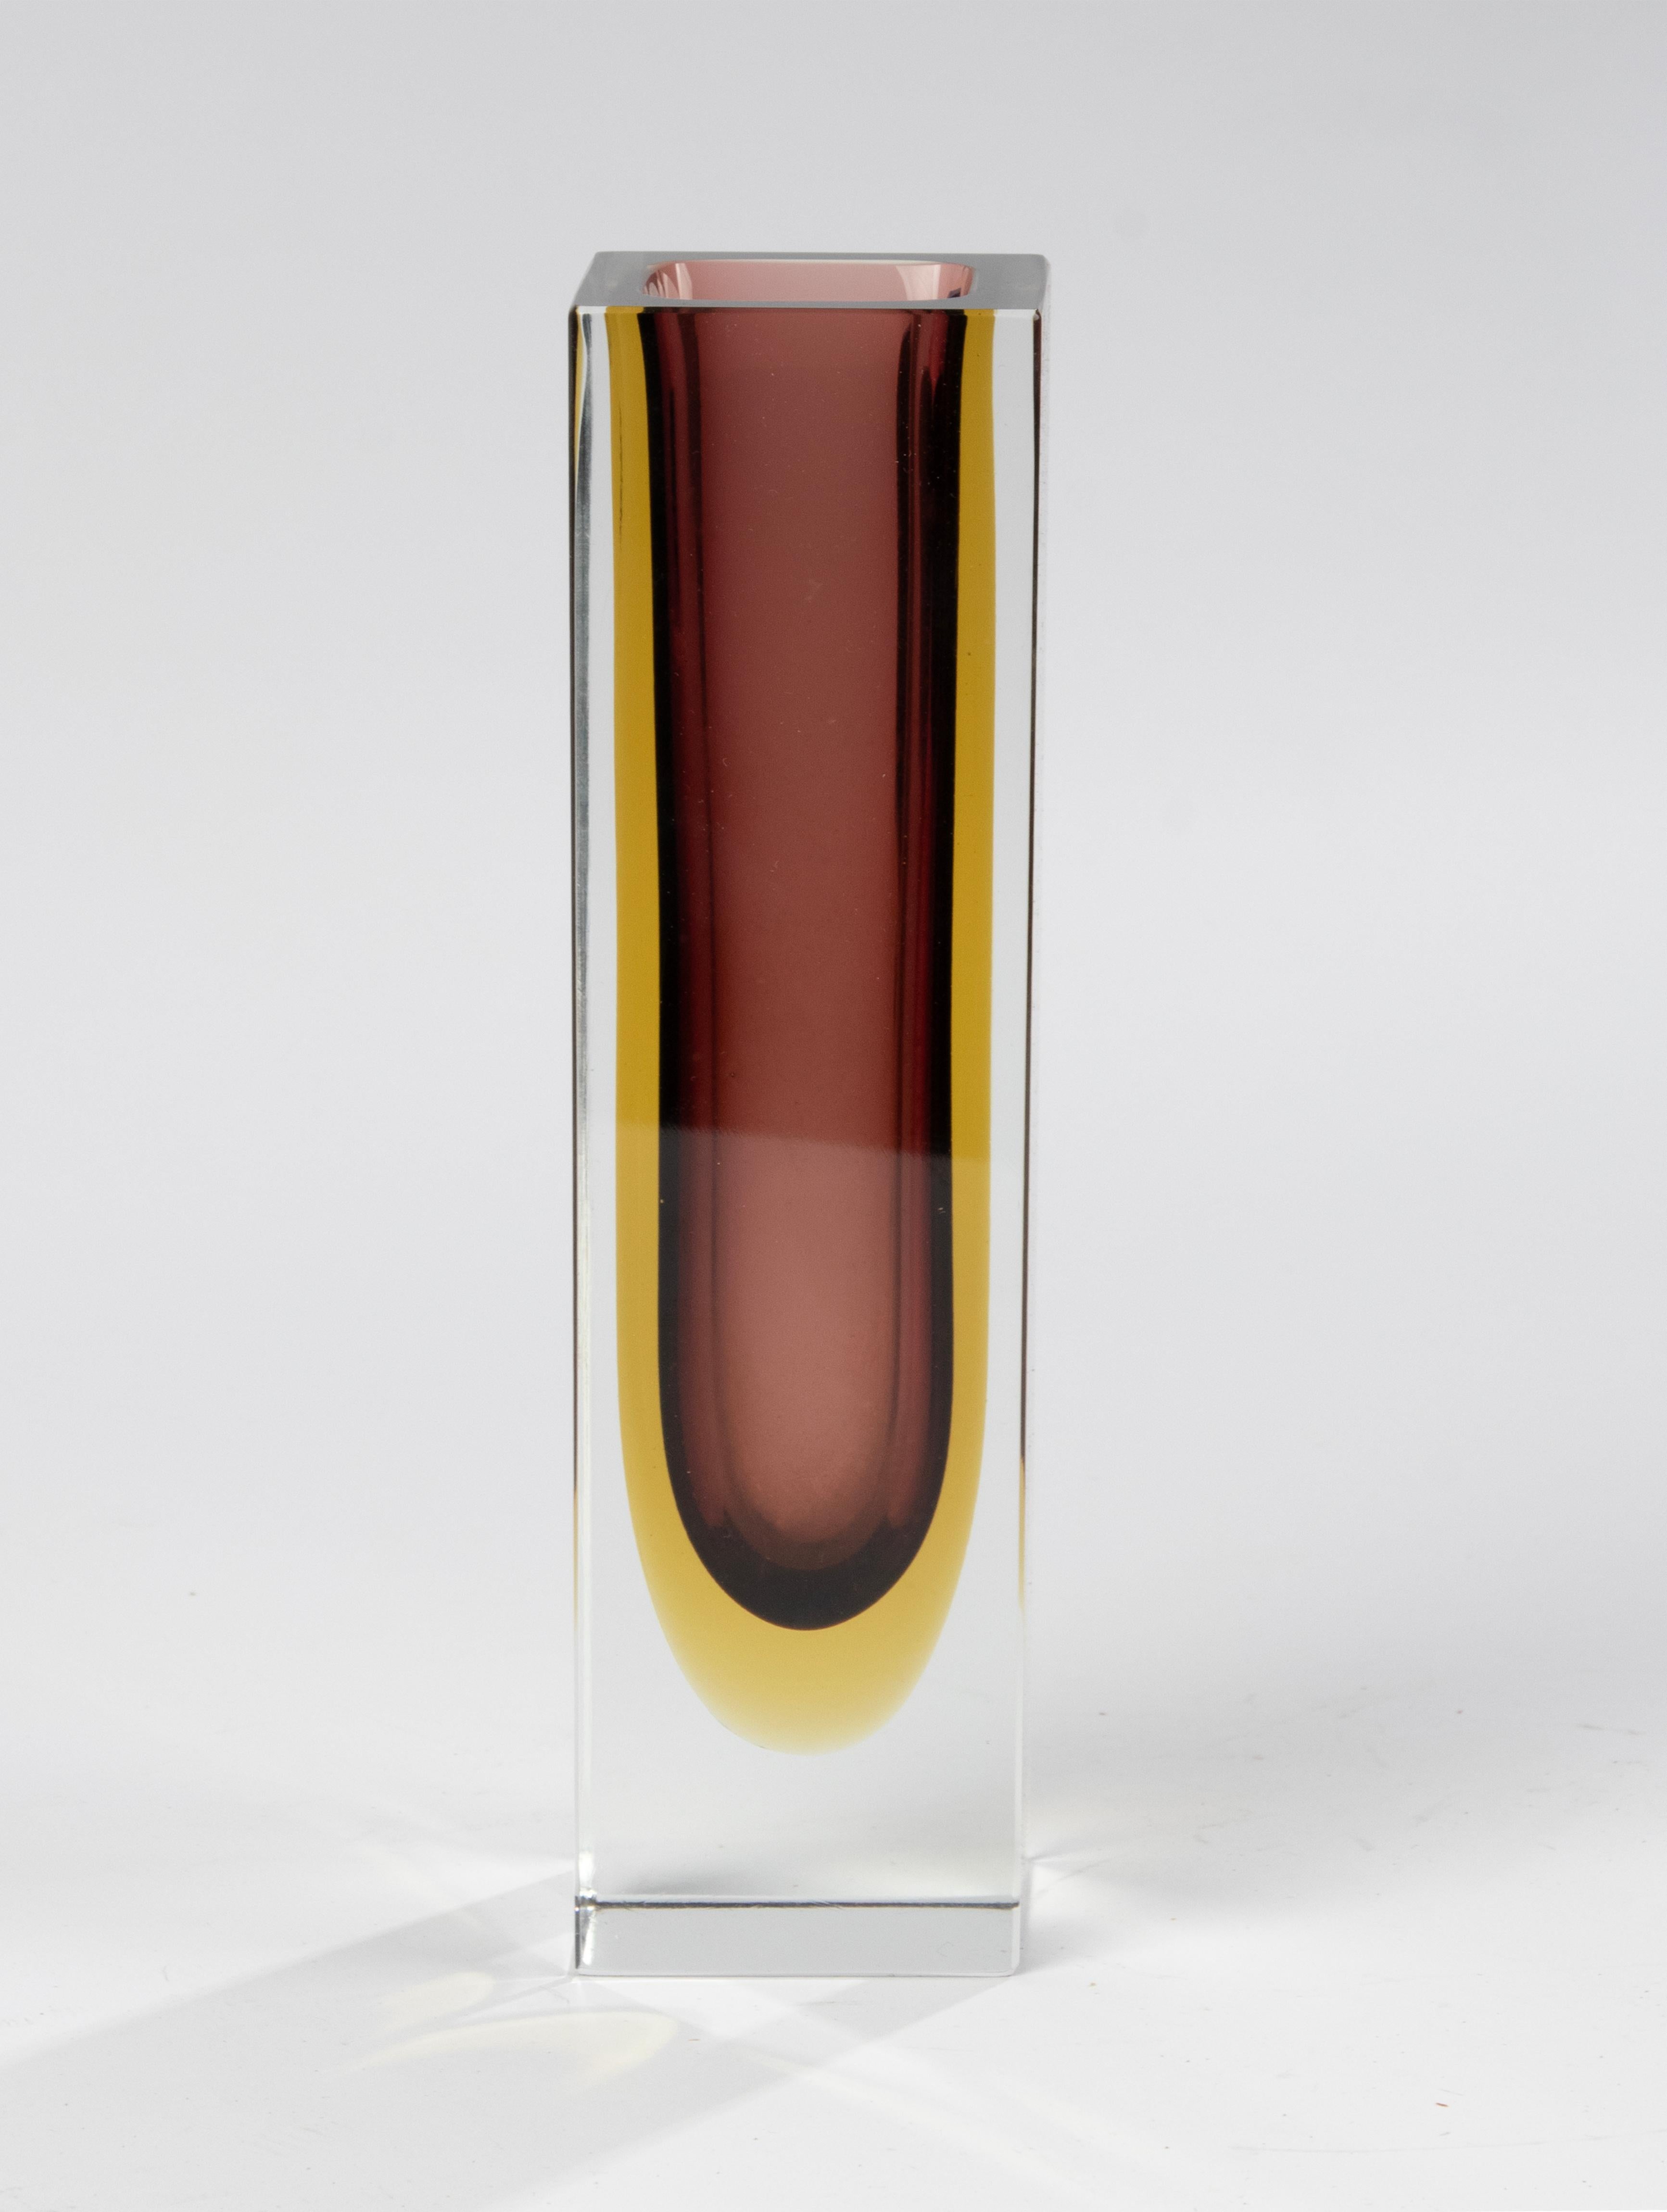 Eine schöne Sommerso-Vase aus Kunstglas, die dem italienischen Designer Flavio Poli zugeschrieben wird. 
Die Vase ist in gutem Zustand. Schöne Farben und Qualität. 

Abmessungen: 6 x 6 cm und 24,5 cm hoch. 
Kostenloser Versand weltweit